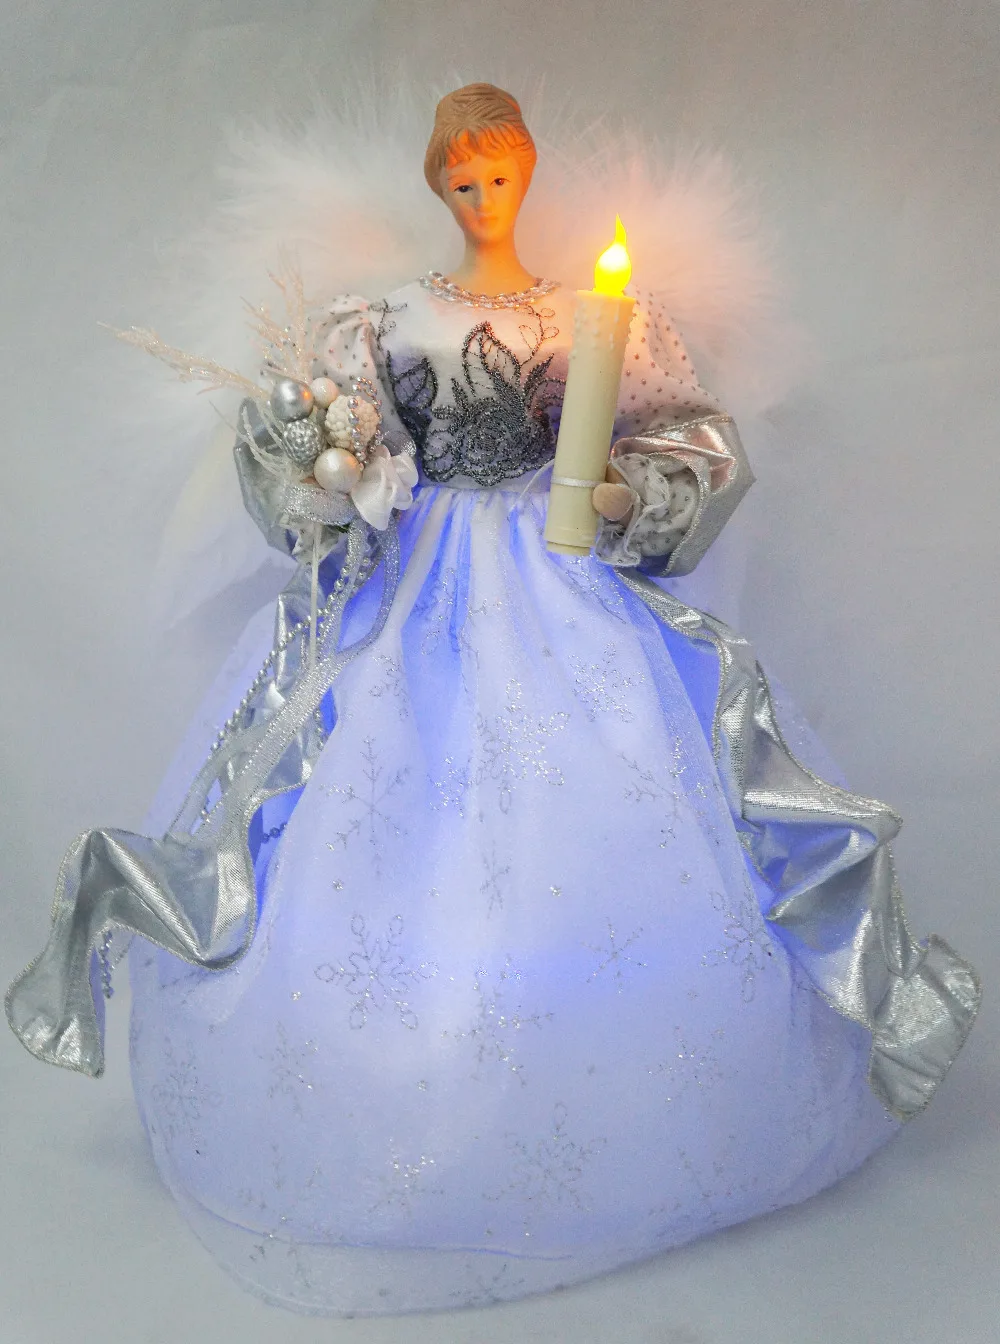 Cosette Рождественский светильник Ангел дерево Топпер фарфоровая кукла приуроченный Орнамент 12 дюймов(высота 30 см